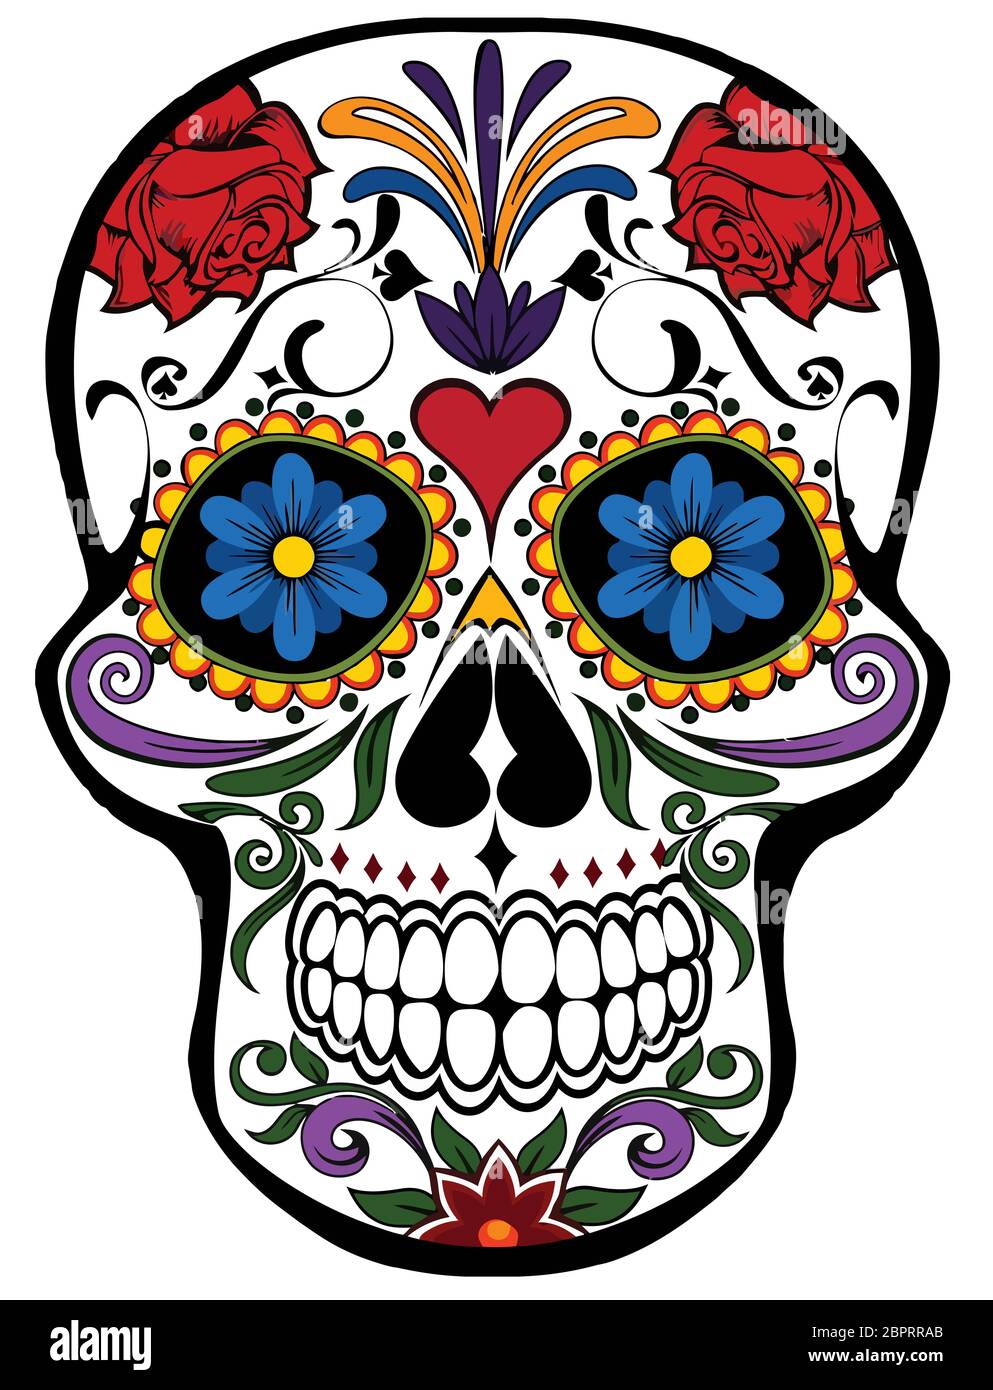 Pirata Birmania Incontable calavera skull mexican festival celebration dead day illustration Stock  Photo - Alamy